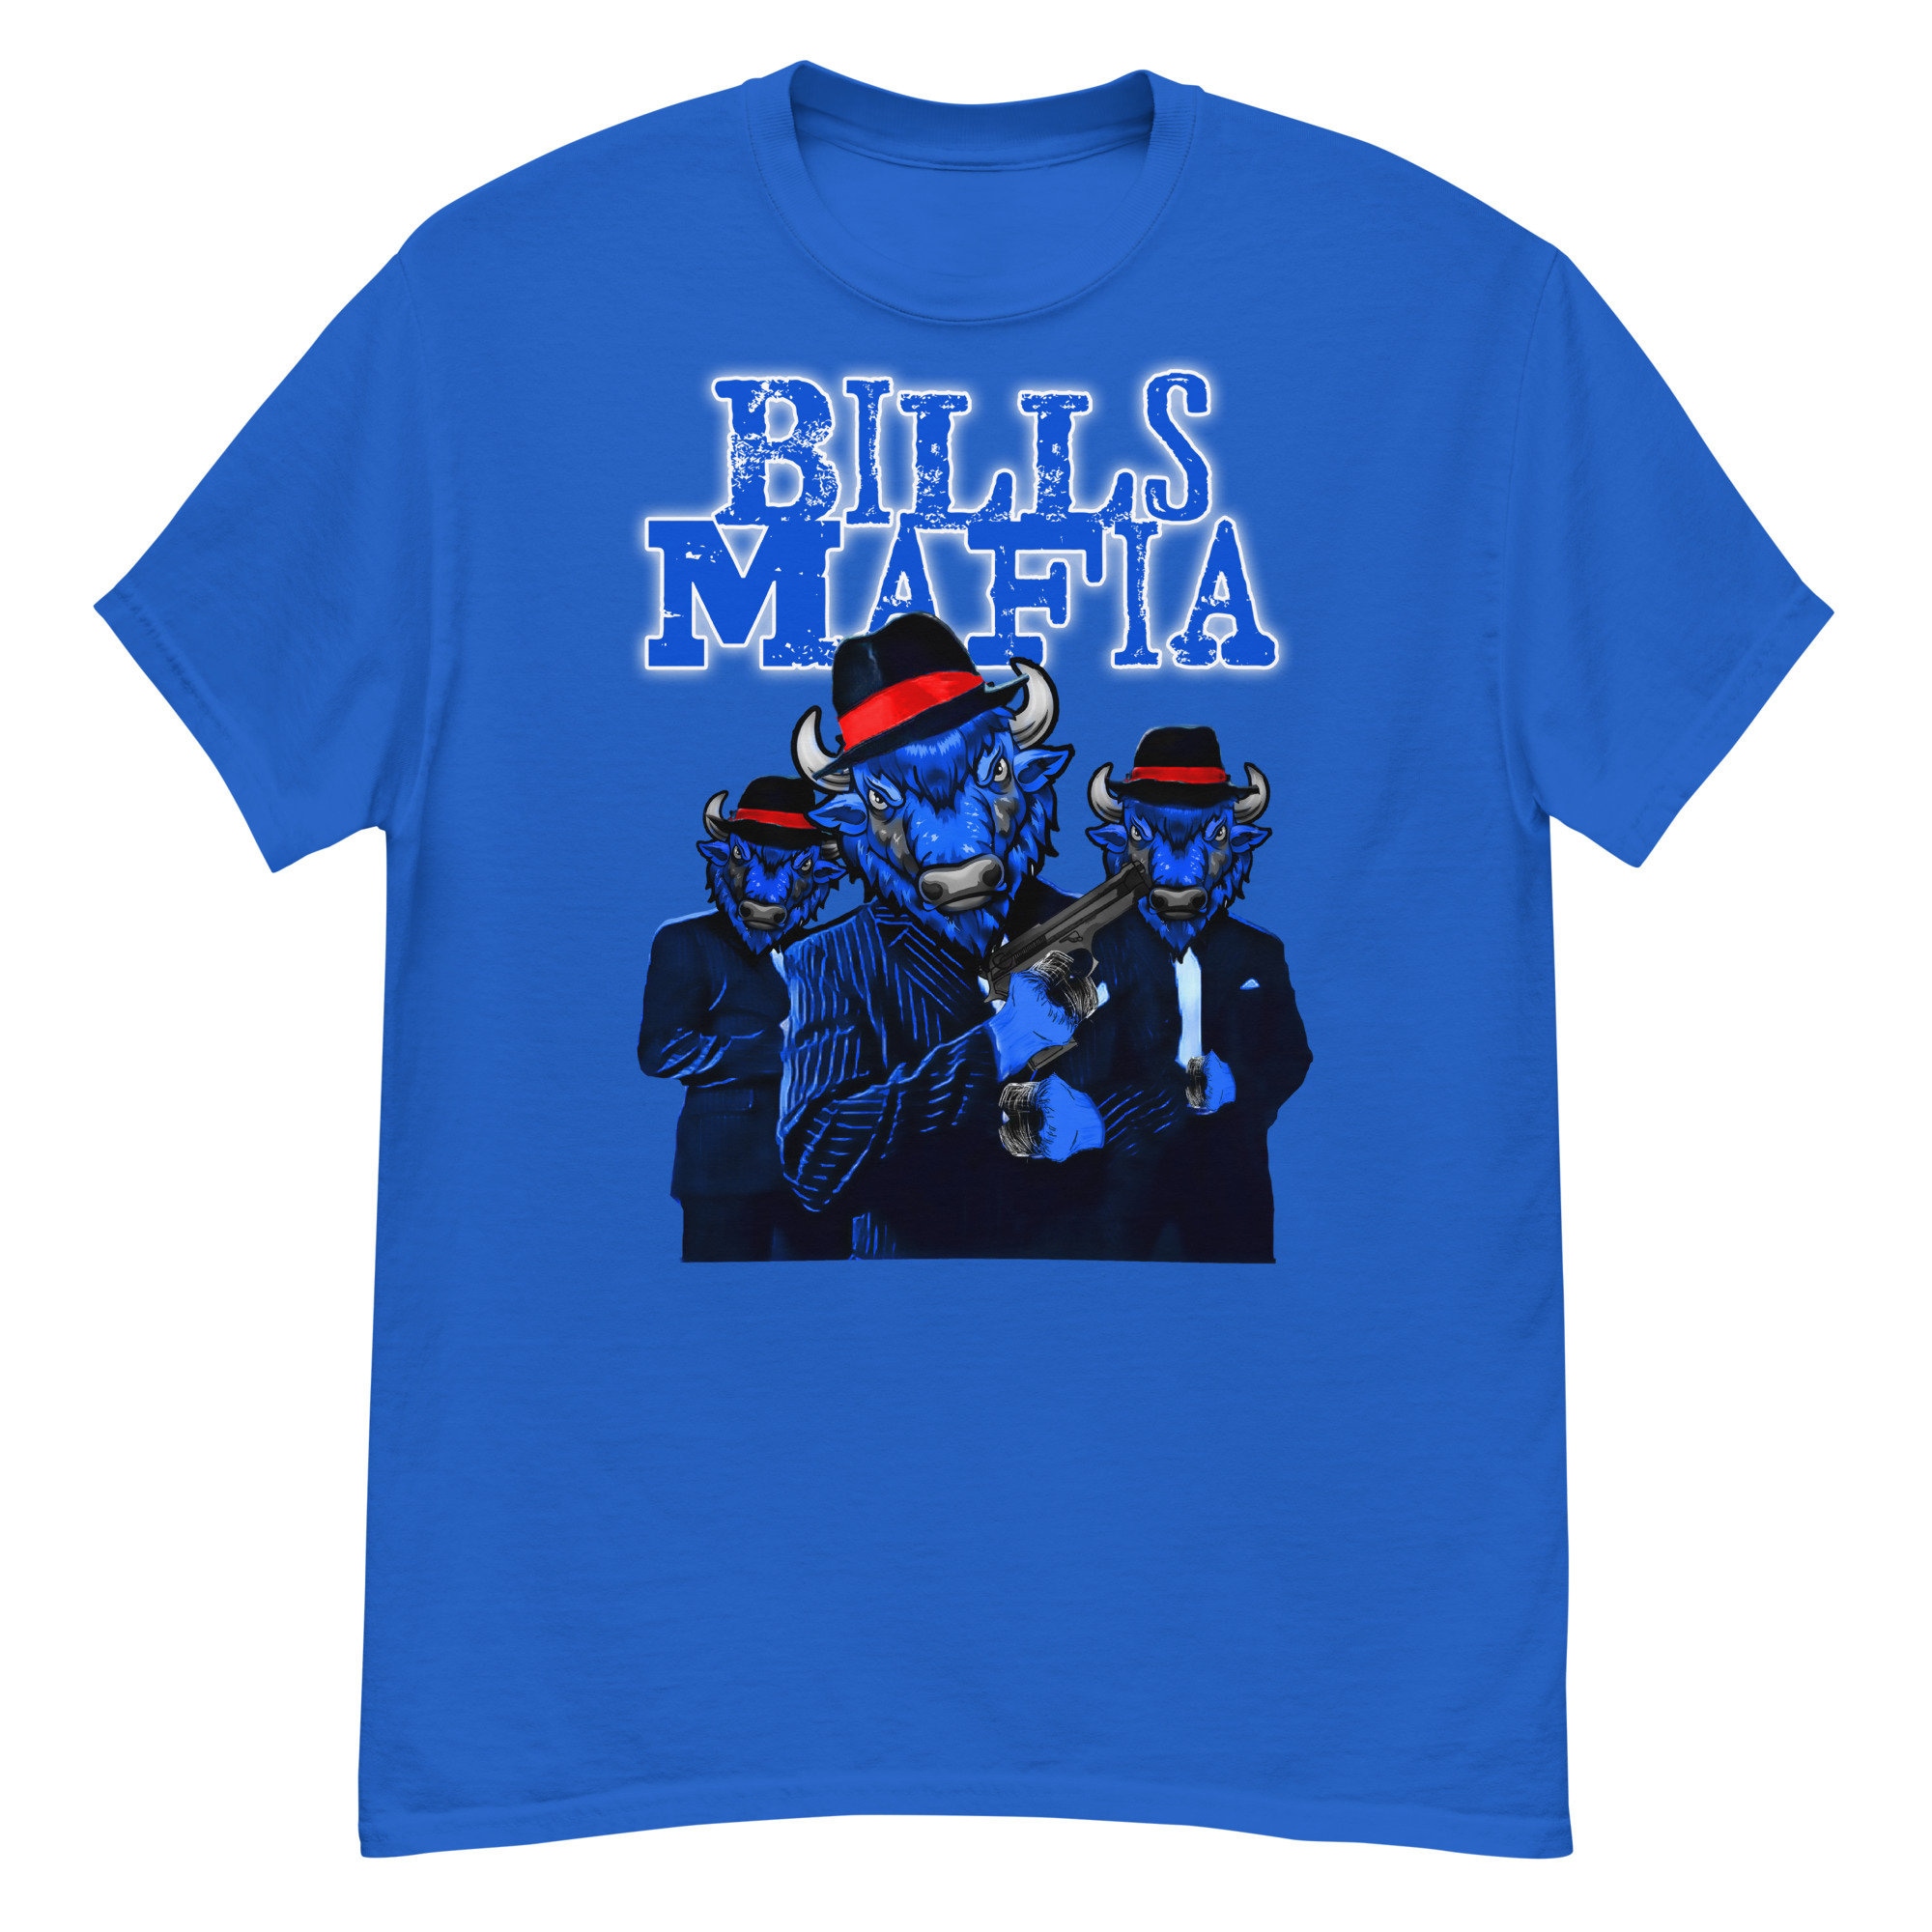 Bills Zubaz Mafia Long Sleeve T-Shirt